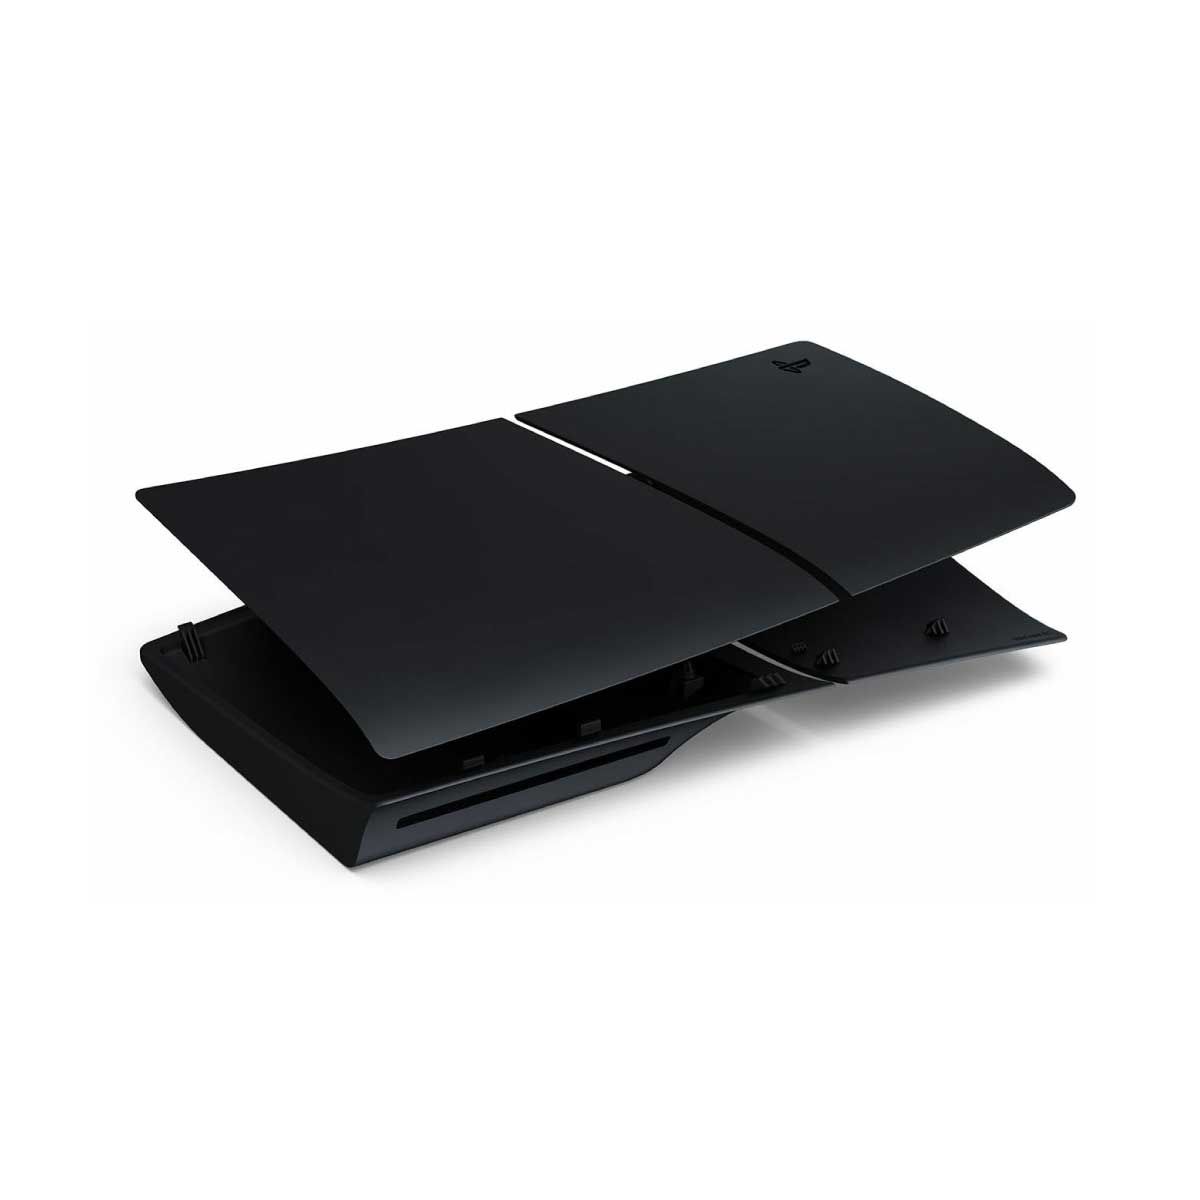 SONY Console Cover Volcanic Black รุ่น CFI-ZCS2G01 ฝาครอบเครื่องเล่นเกมส์ สี Black